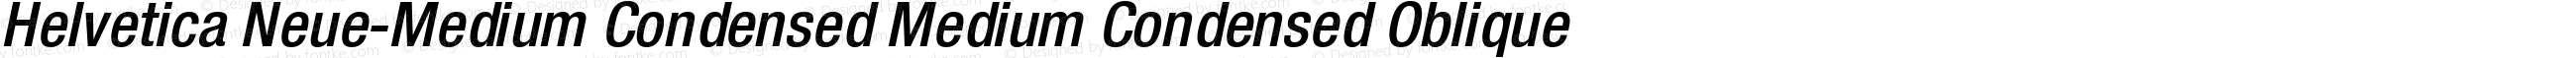 Helvetica Neue-Medium Condensed Medium Condensed Oblique